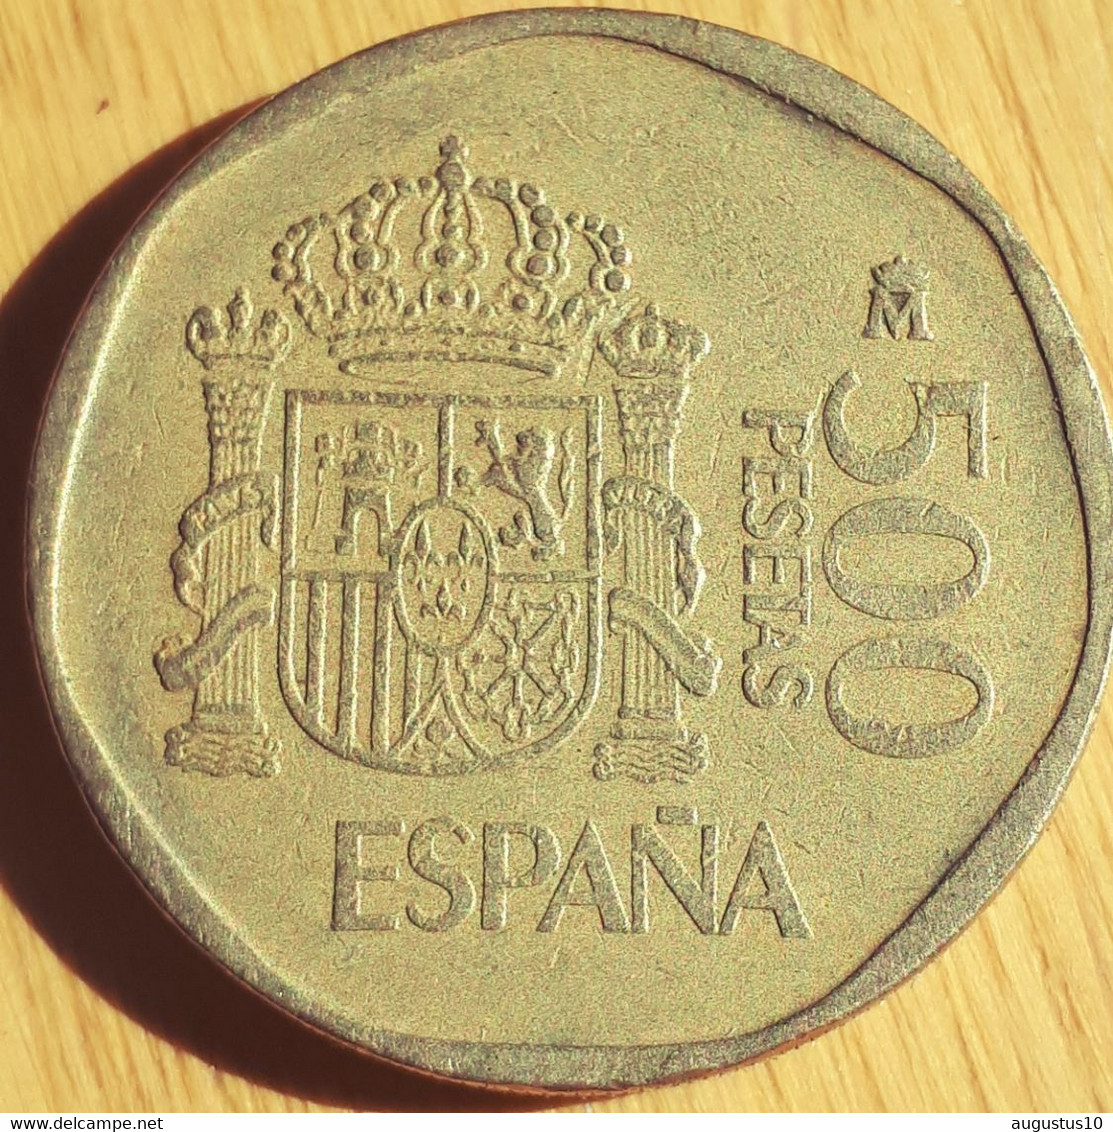 SPAIN :500 PESETAS 1987  KM 831 - 500 Pesetas